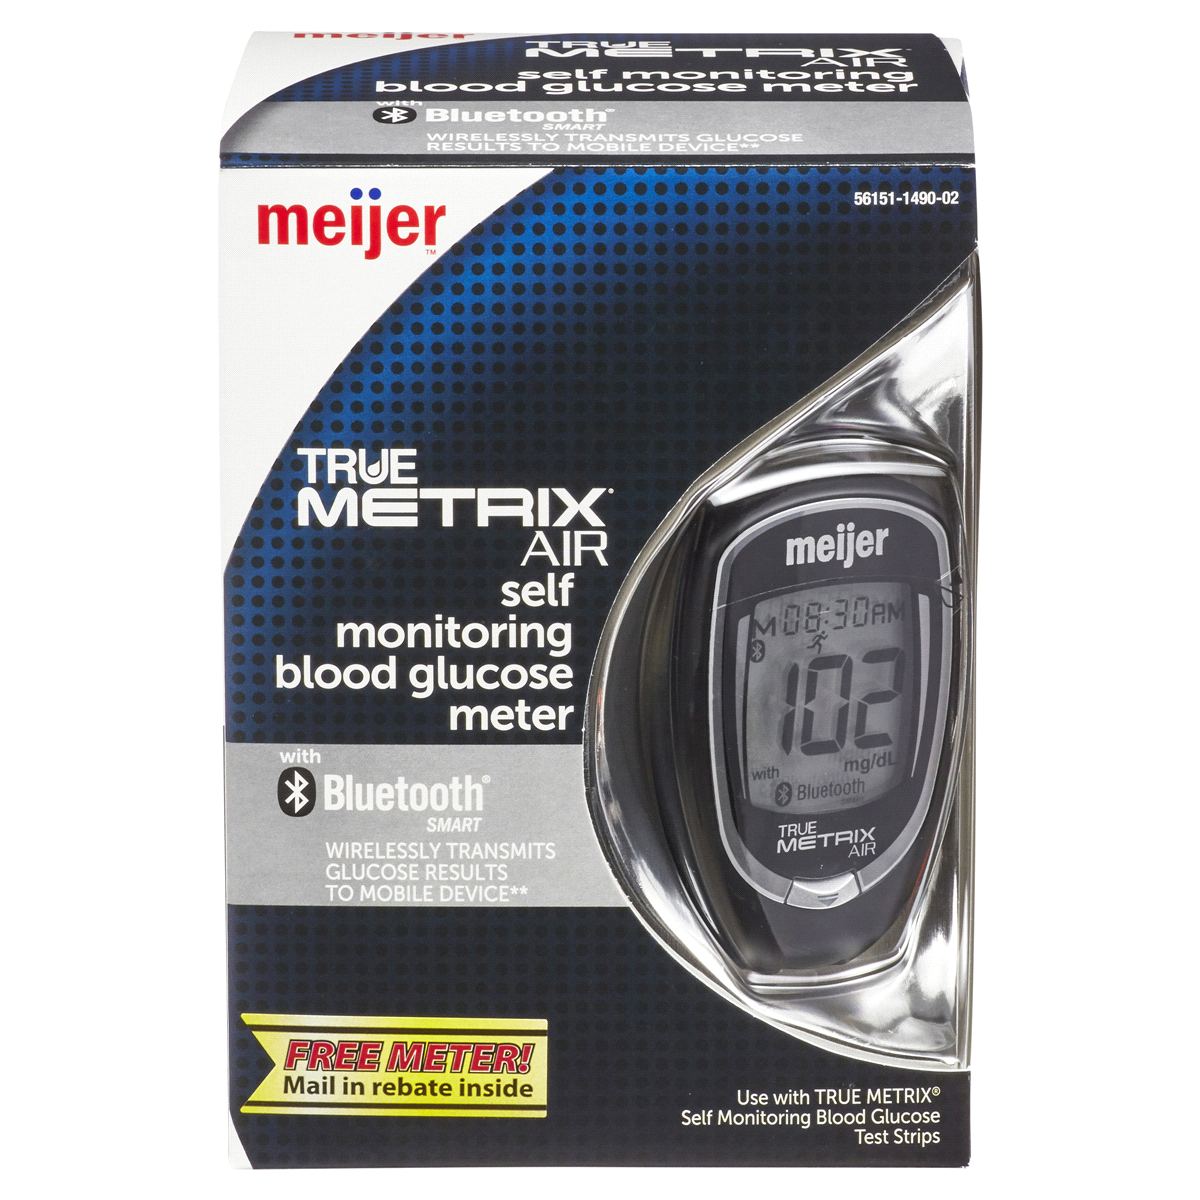 slide 1 of 29, Meijer True Metrix Air Self Monitoring Blood Glucose Meter, 1 ct